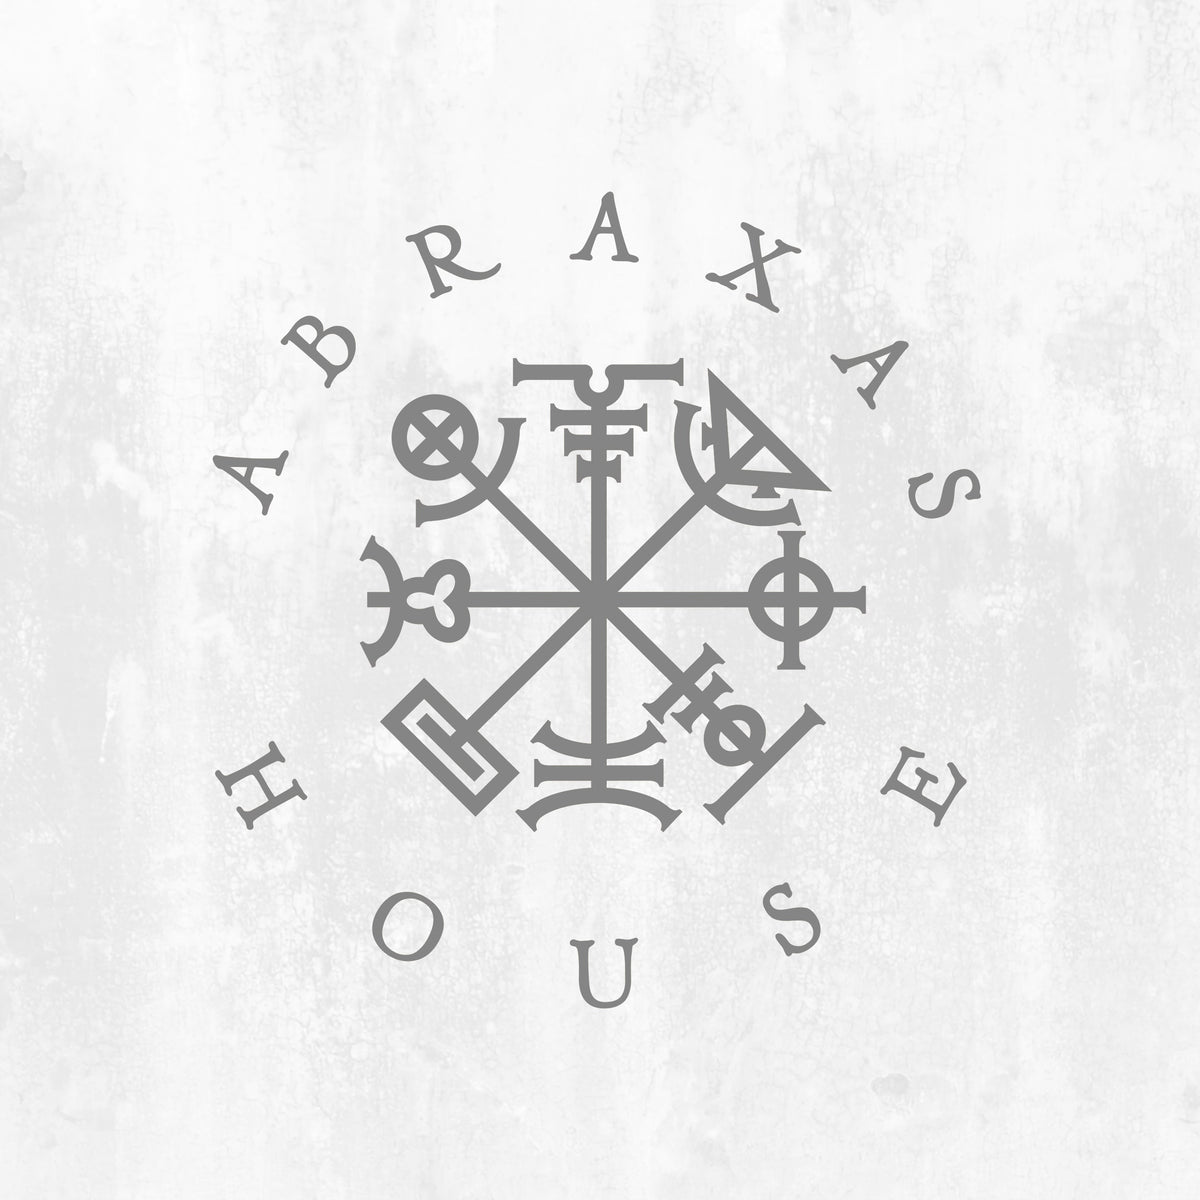 Abraxas House